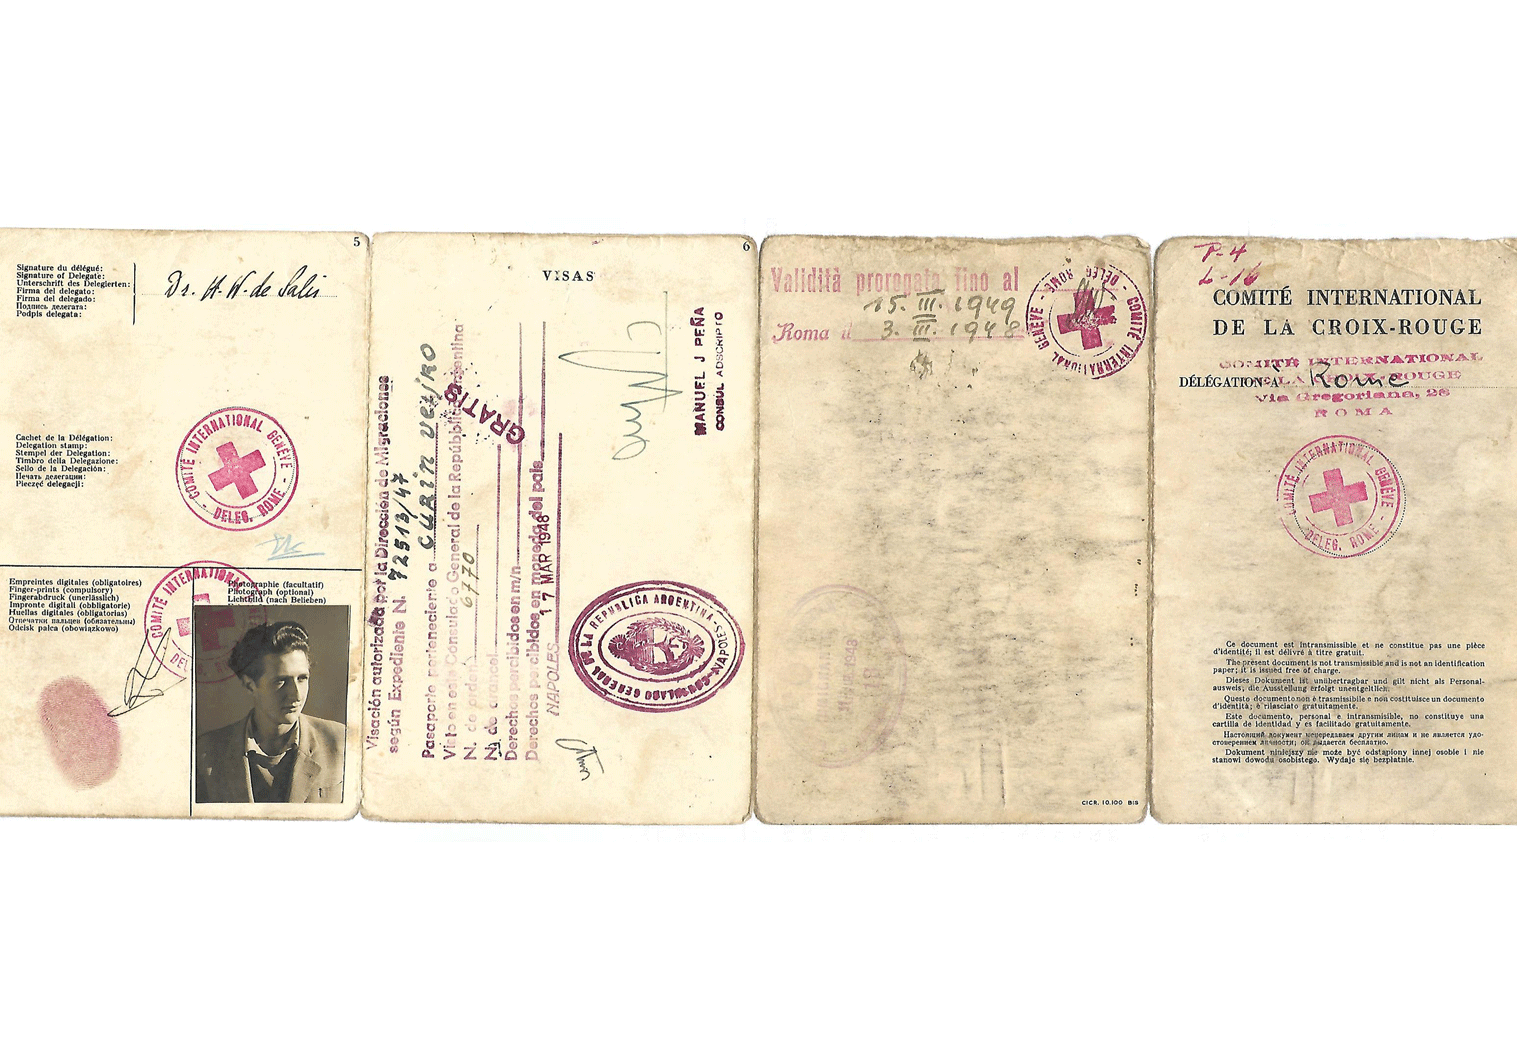 WW2 Ratline passport